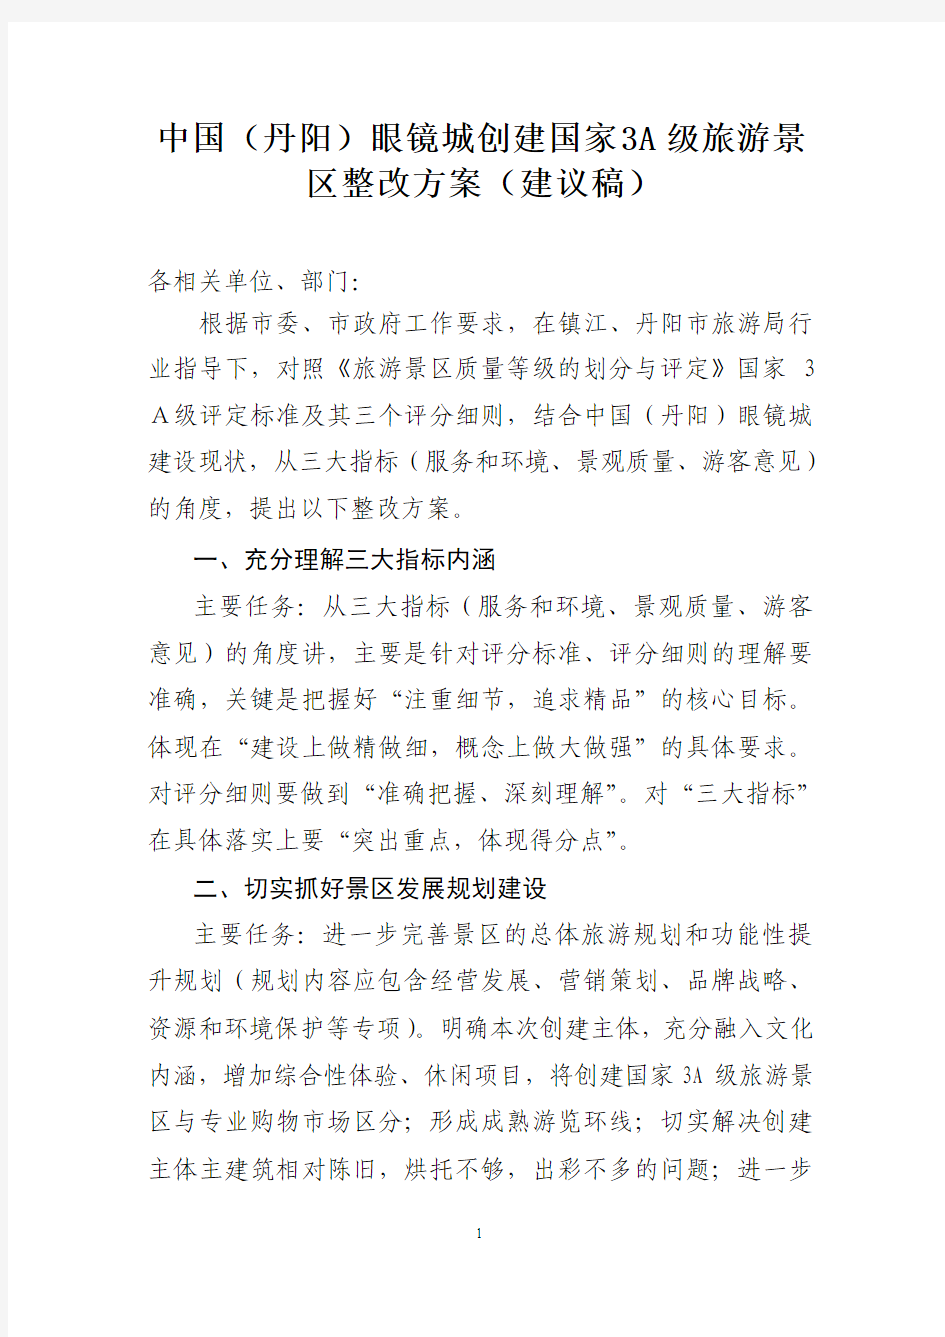 中国(丹阳)眼镜城创建国家3A级旅游景区整改方案(建议稿)